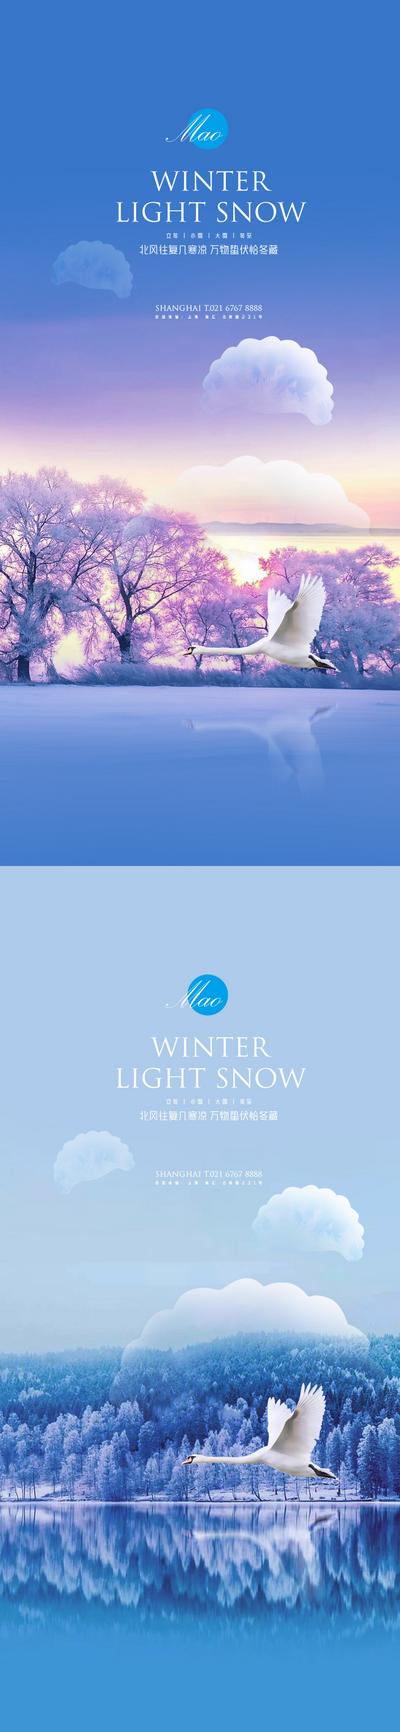 南门网 海报 地产 二十四节气 立冬 小雪 大雪 冬至 饺子 湖泊 天鹅 创意